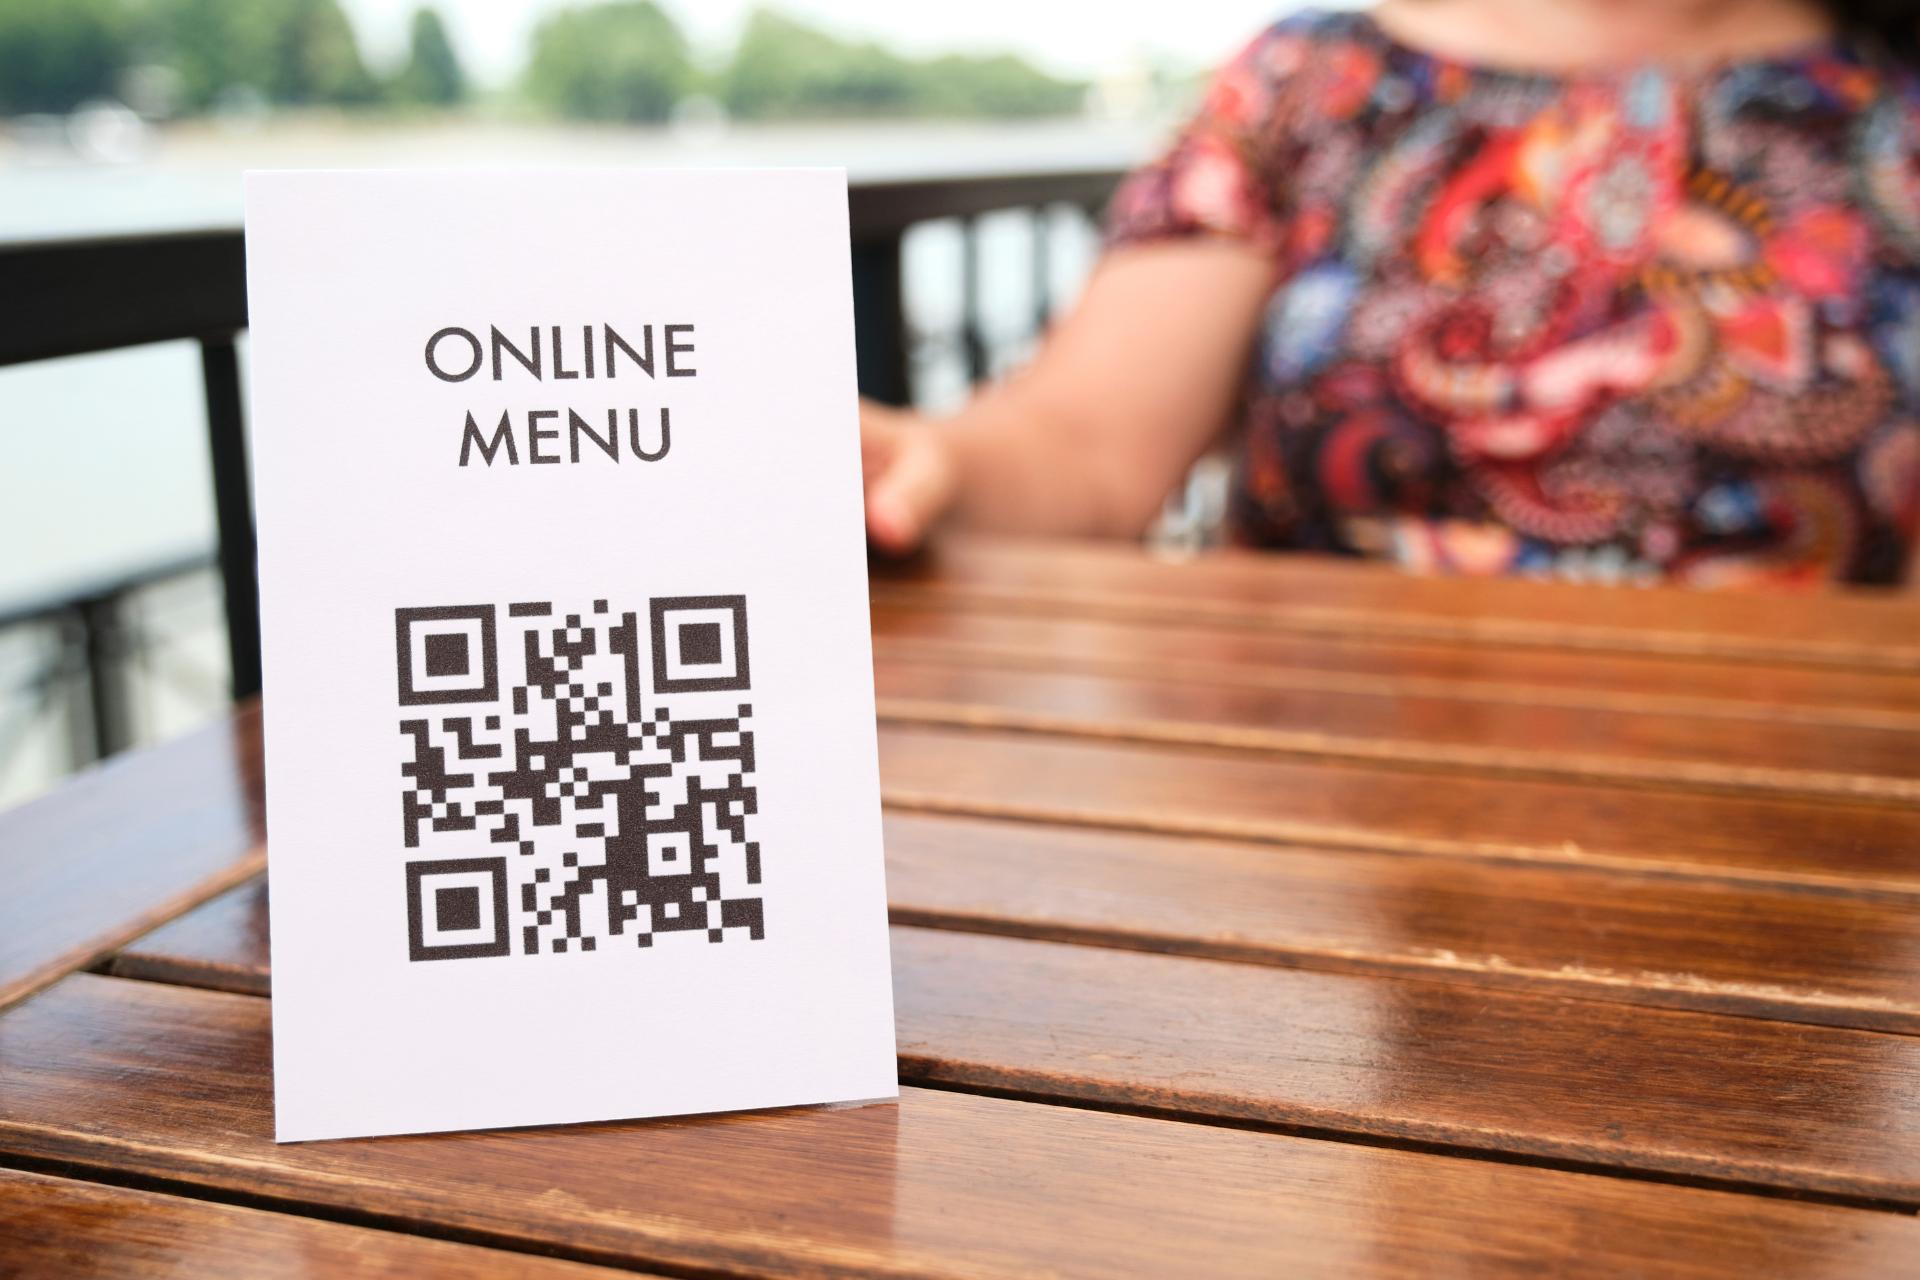 Los códigos QR de restaurantes son parte de las muchas formas diferentes en que puede automatizar el servicio de su restaurante.